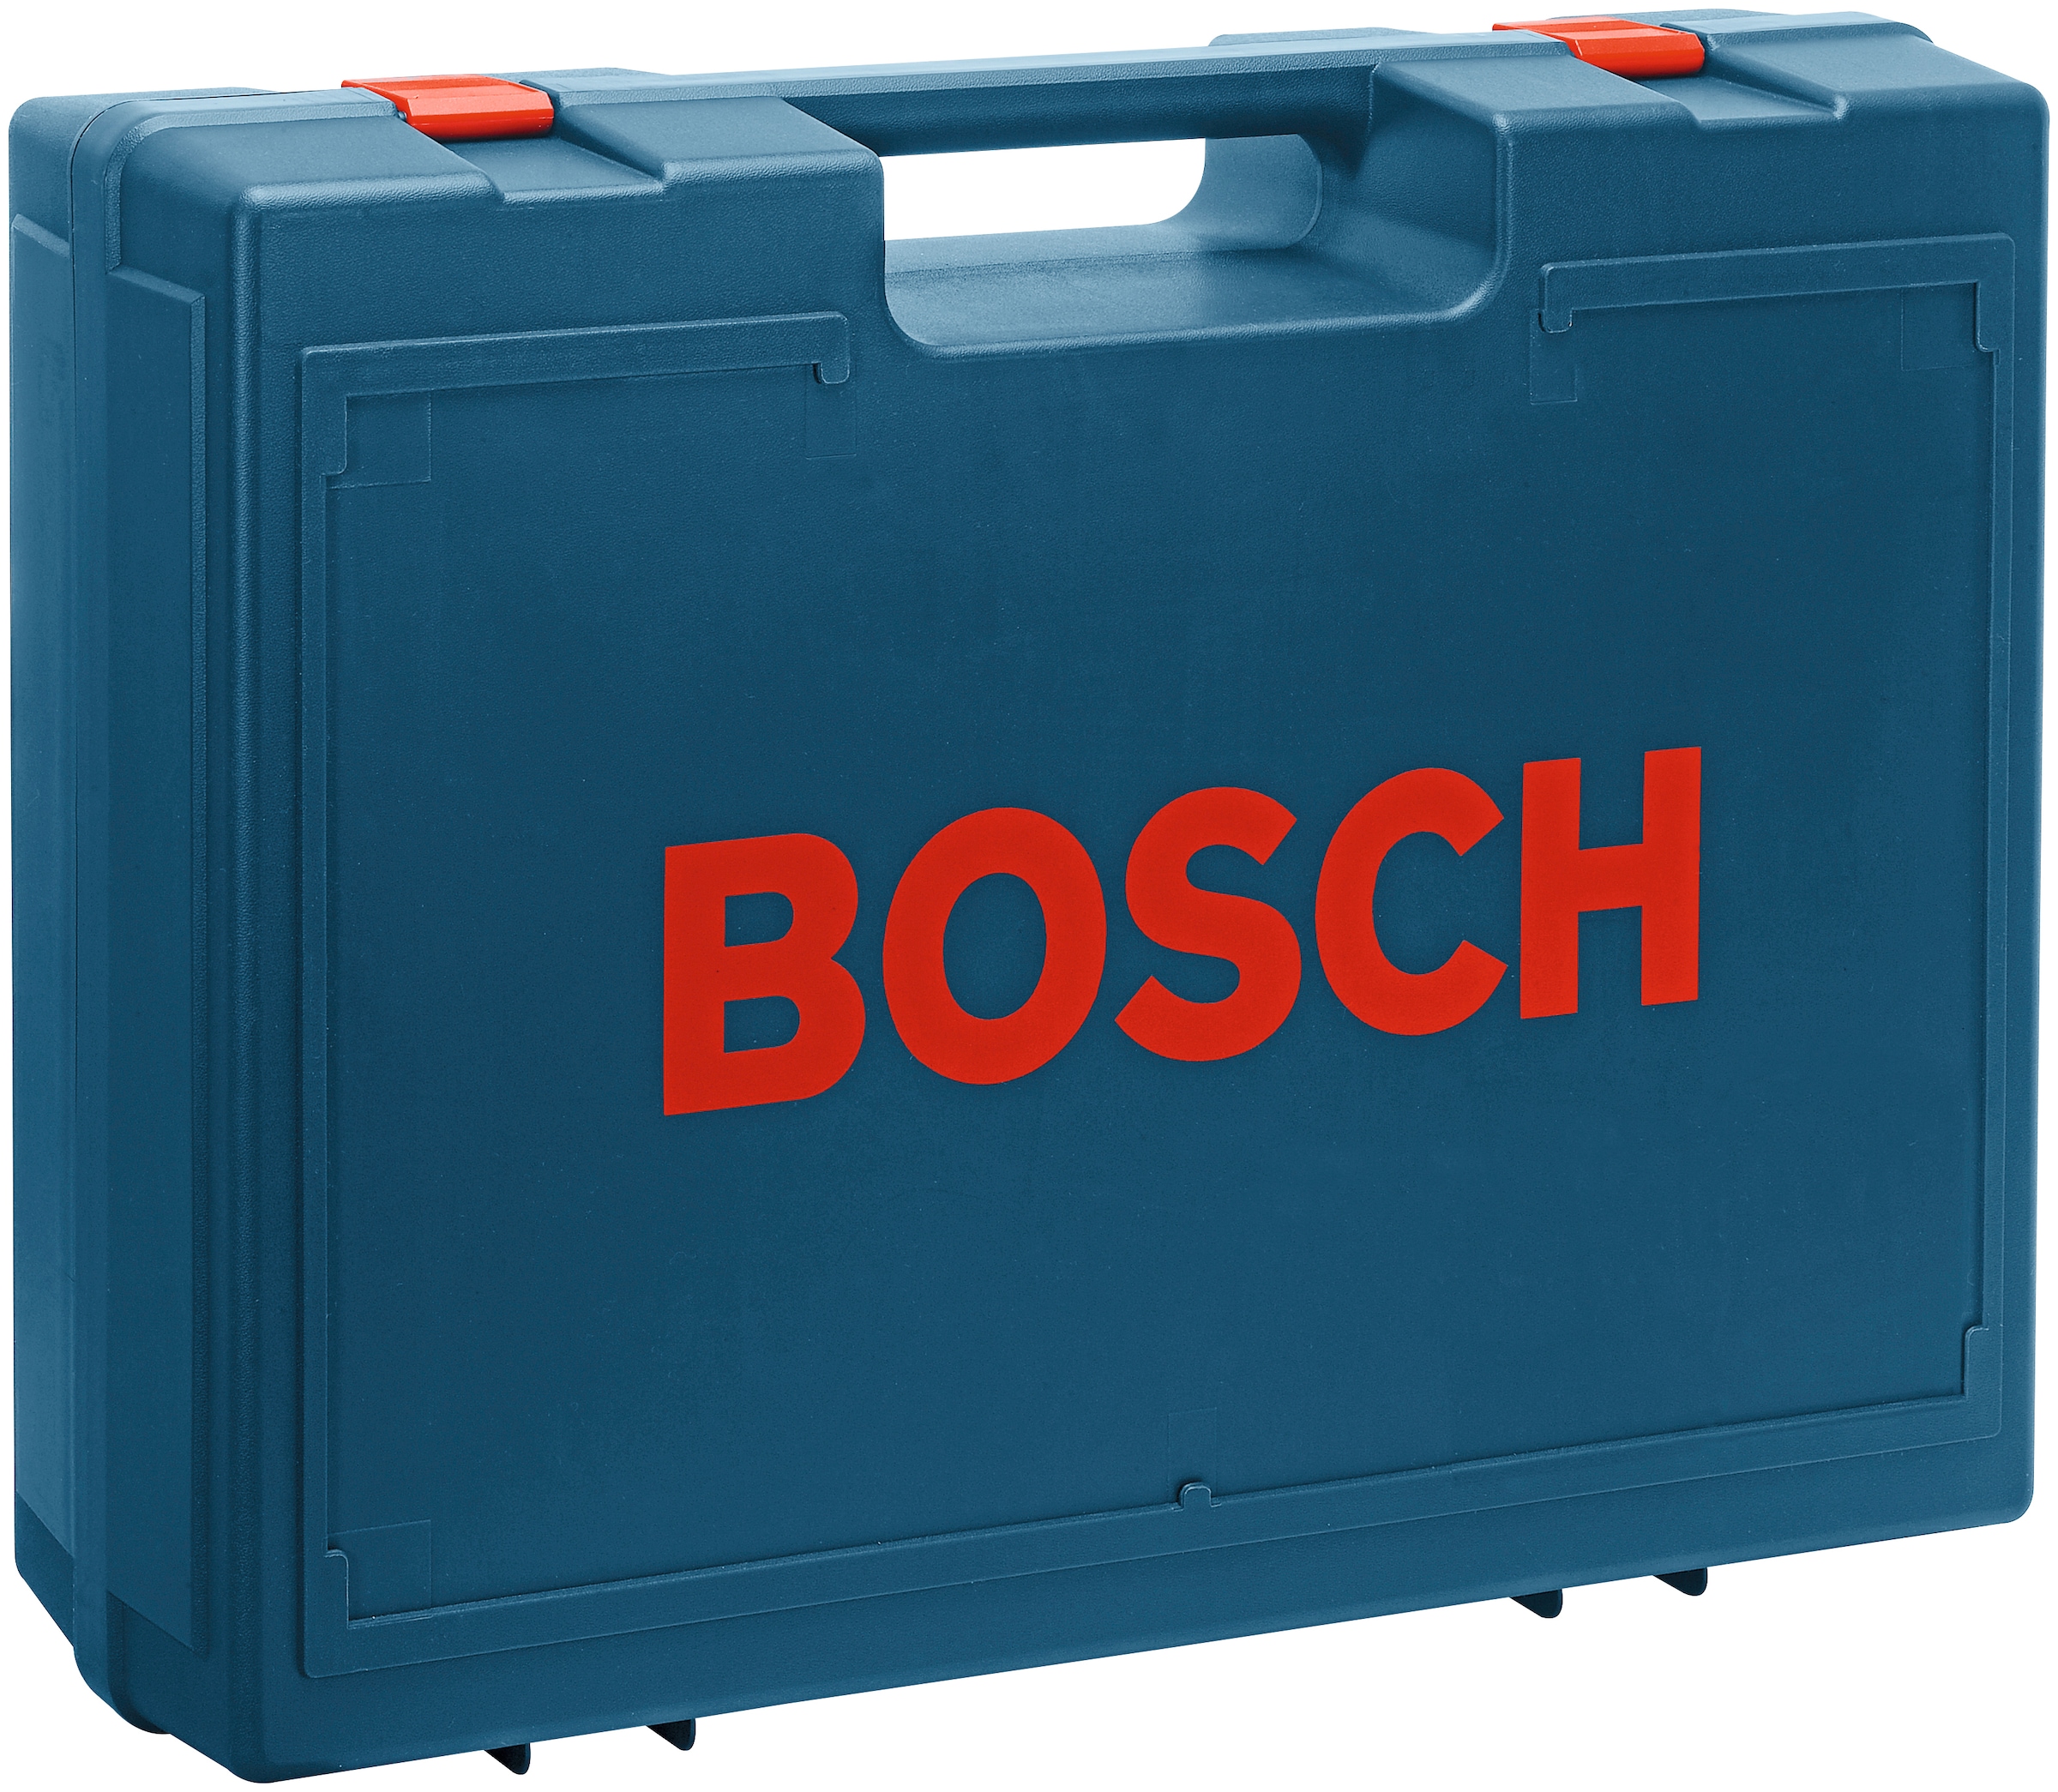 Bosch Professional Bandschleifer »GBS 75 AE«